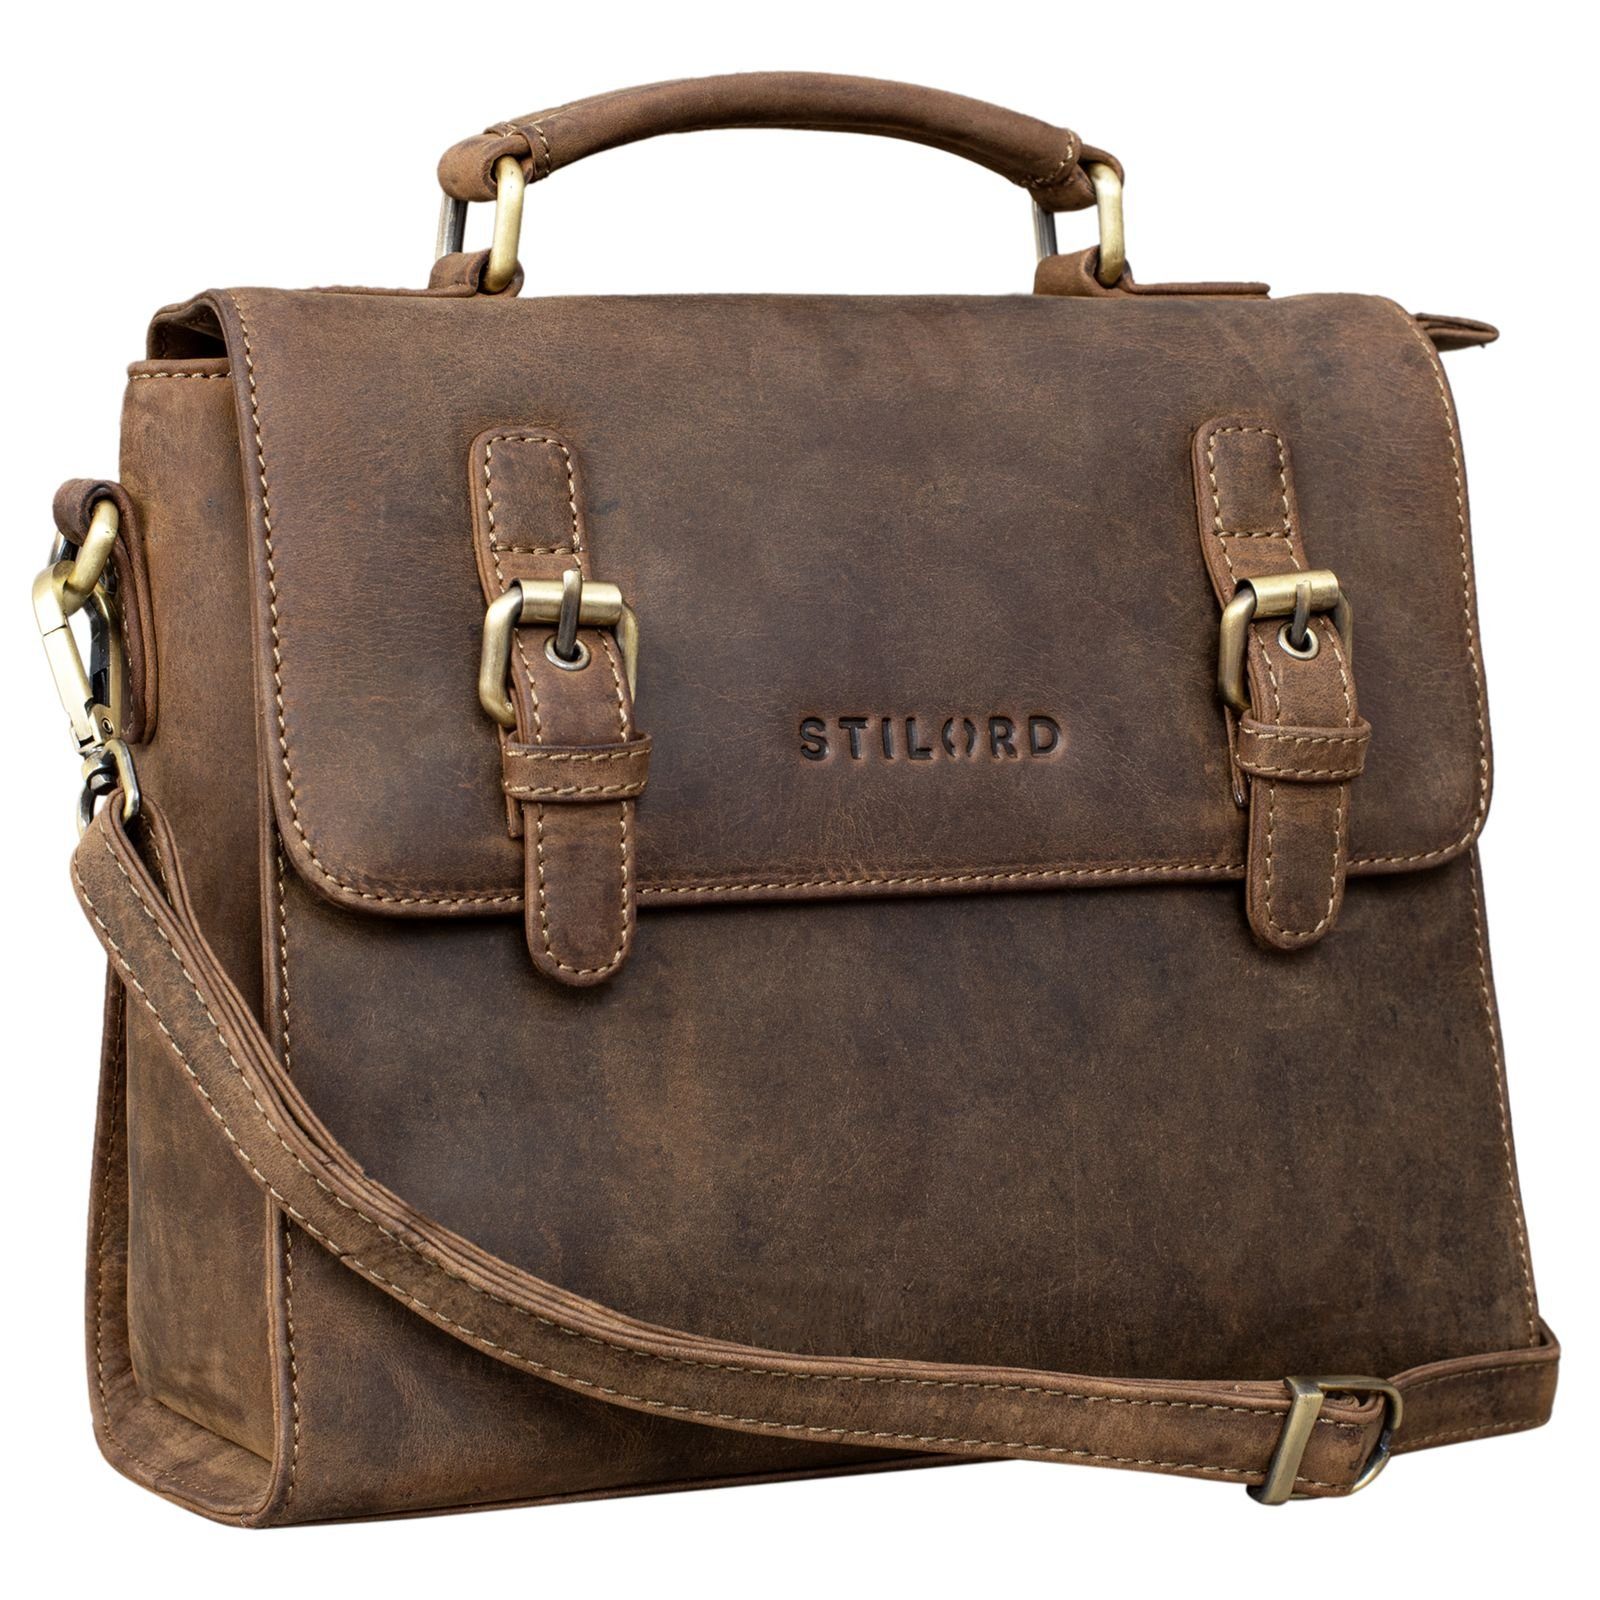 STILORD Handtasche "Estelle" Fashion Handtasche Leder mittel - braun